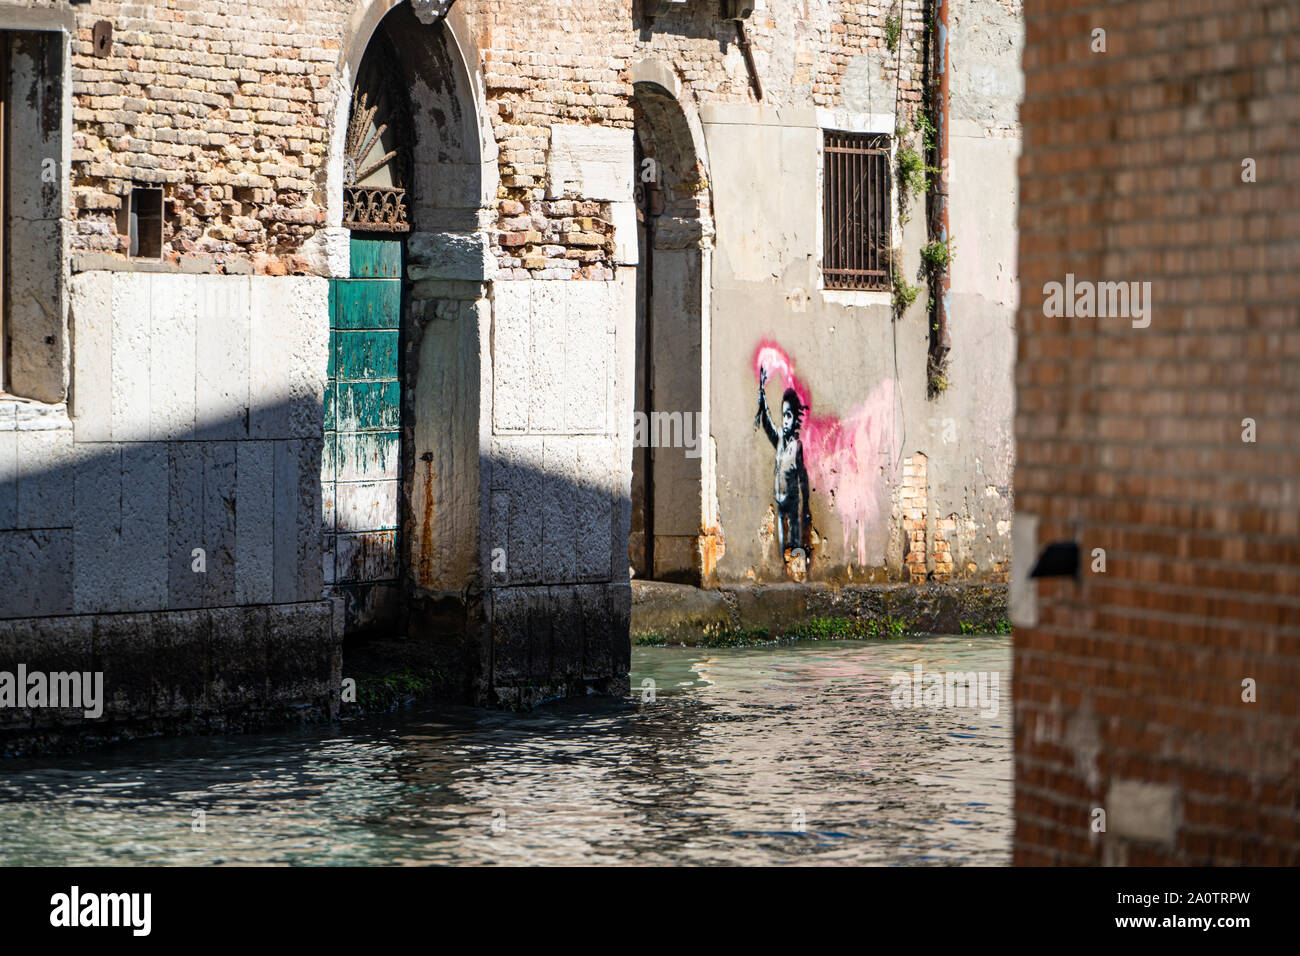 Banksy 'Migrant Child', mural / graffiti / art, Dorsoduro district, Venice, Italy Stock Photo